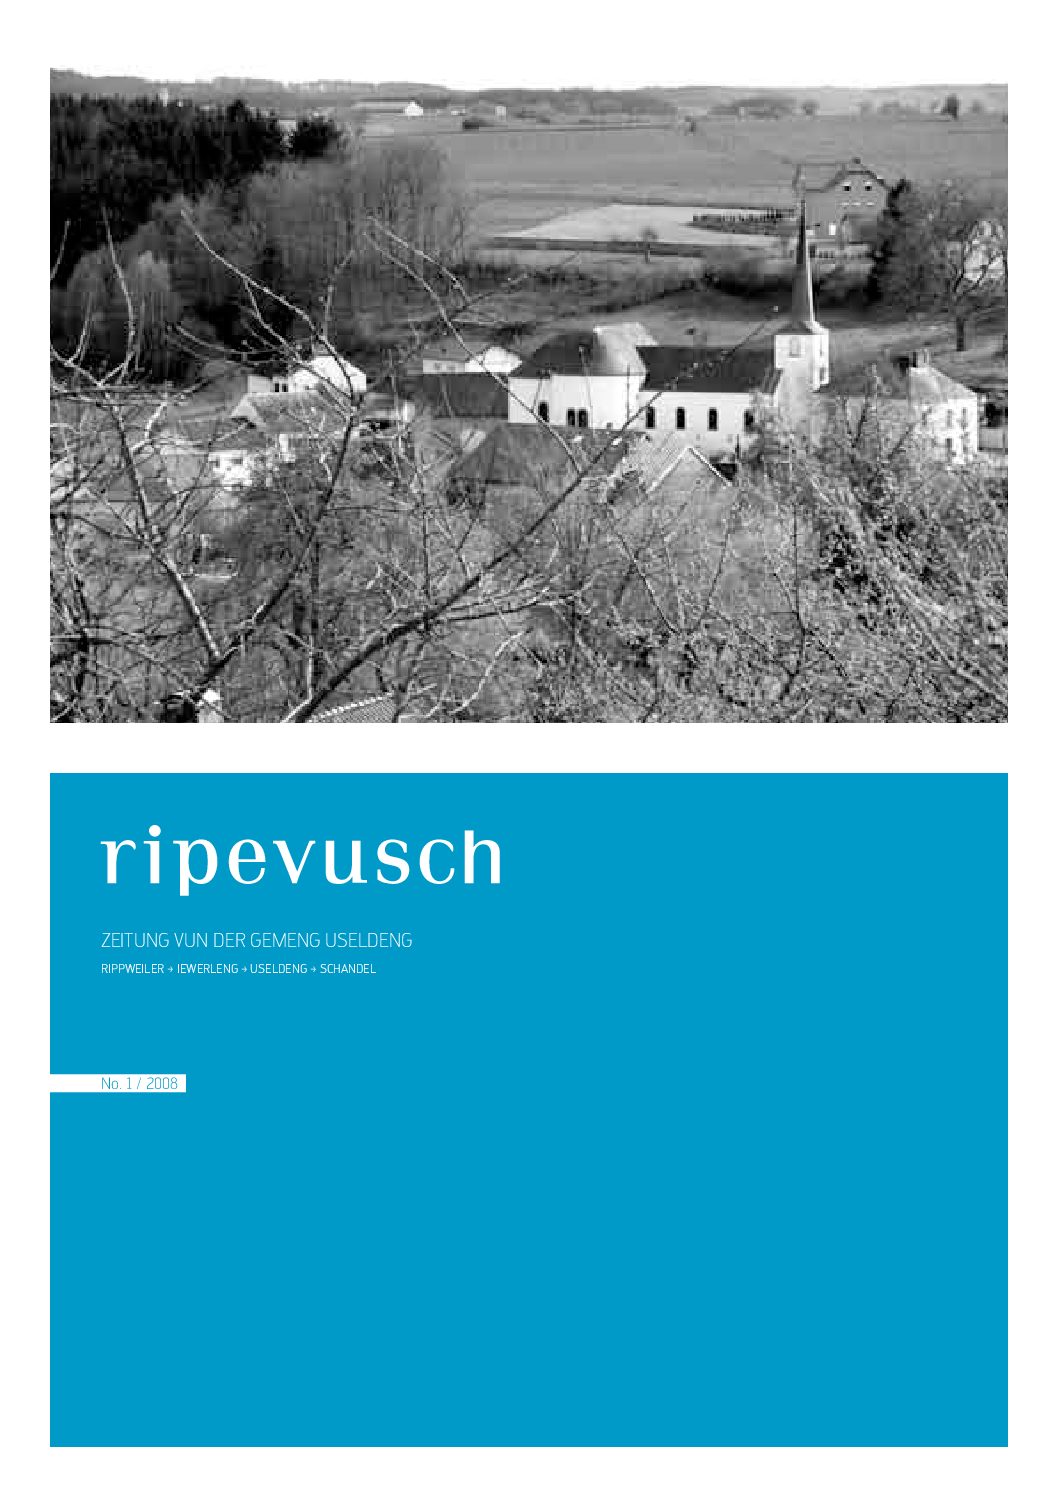 Ripevusch 2008-1